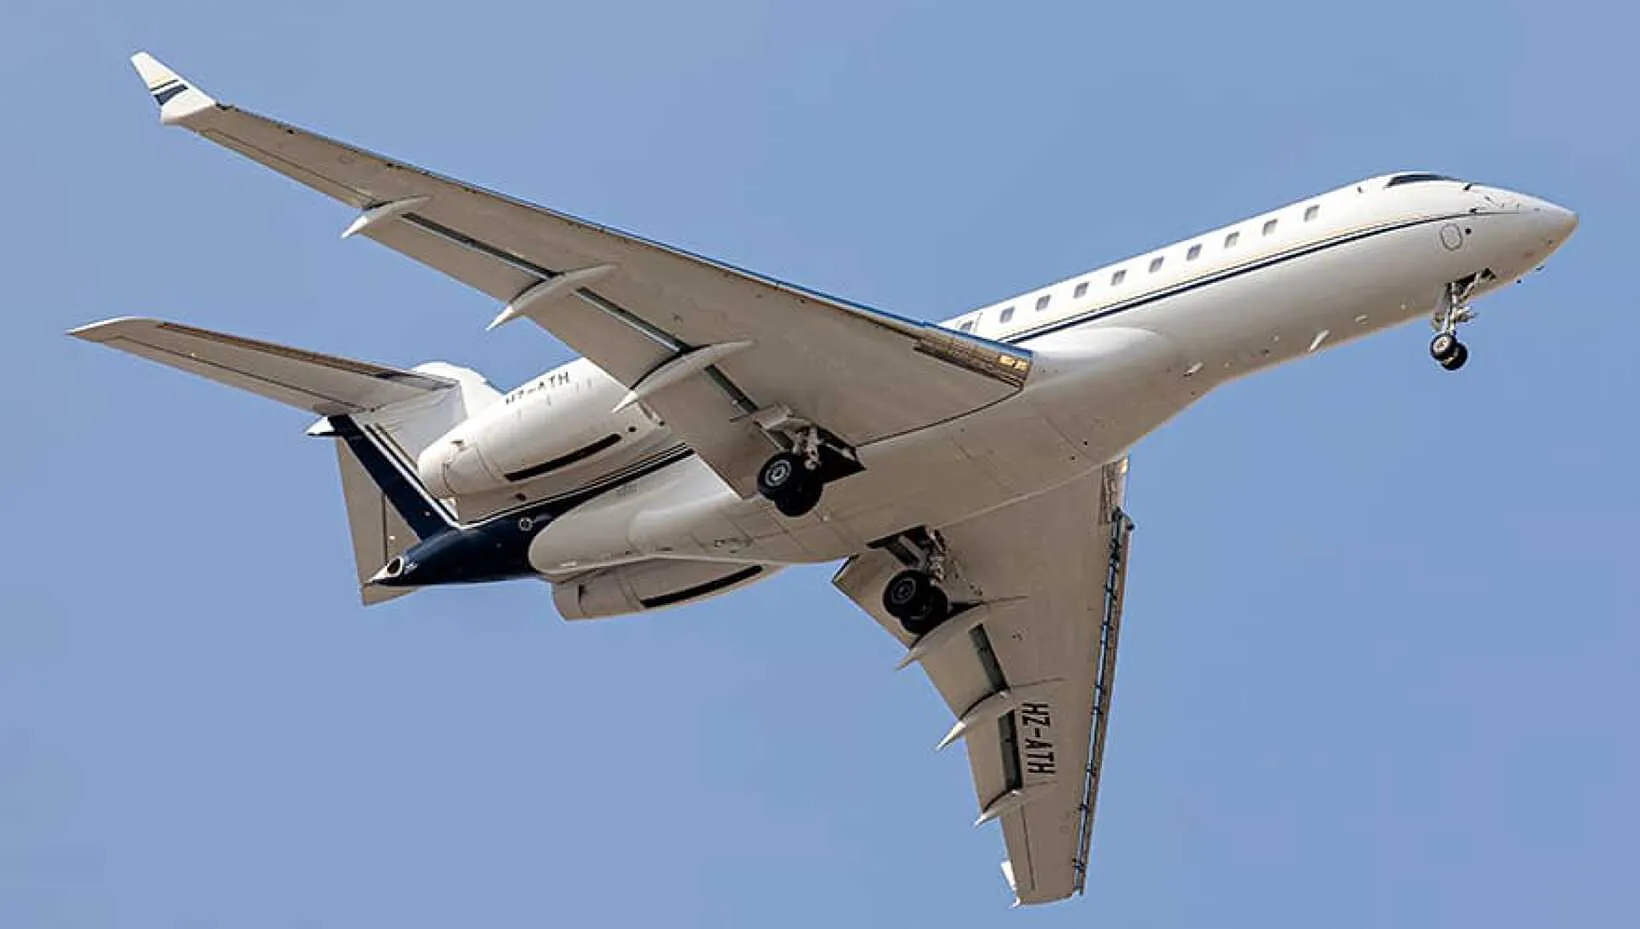 El jet Bombardier Global 6000, en pleno vuelo. Foto: lunajets.com.